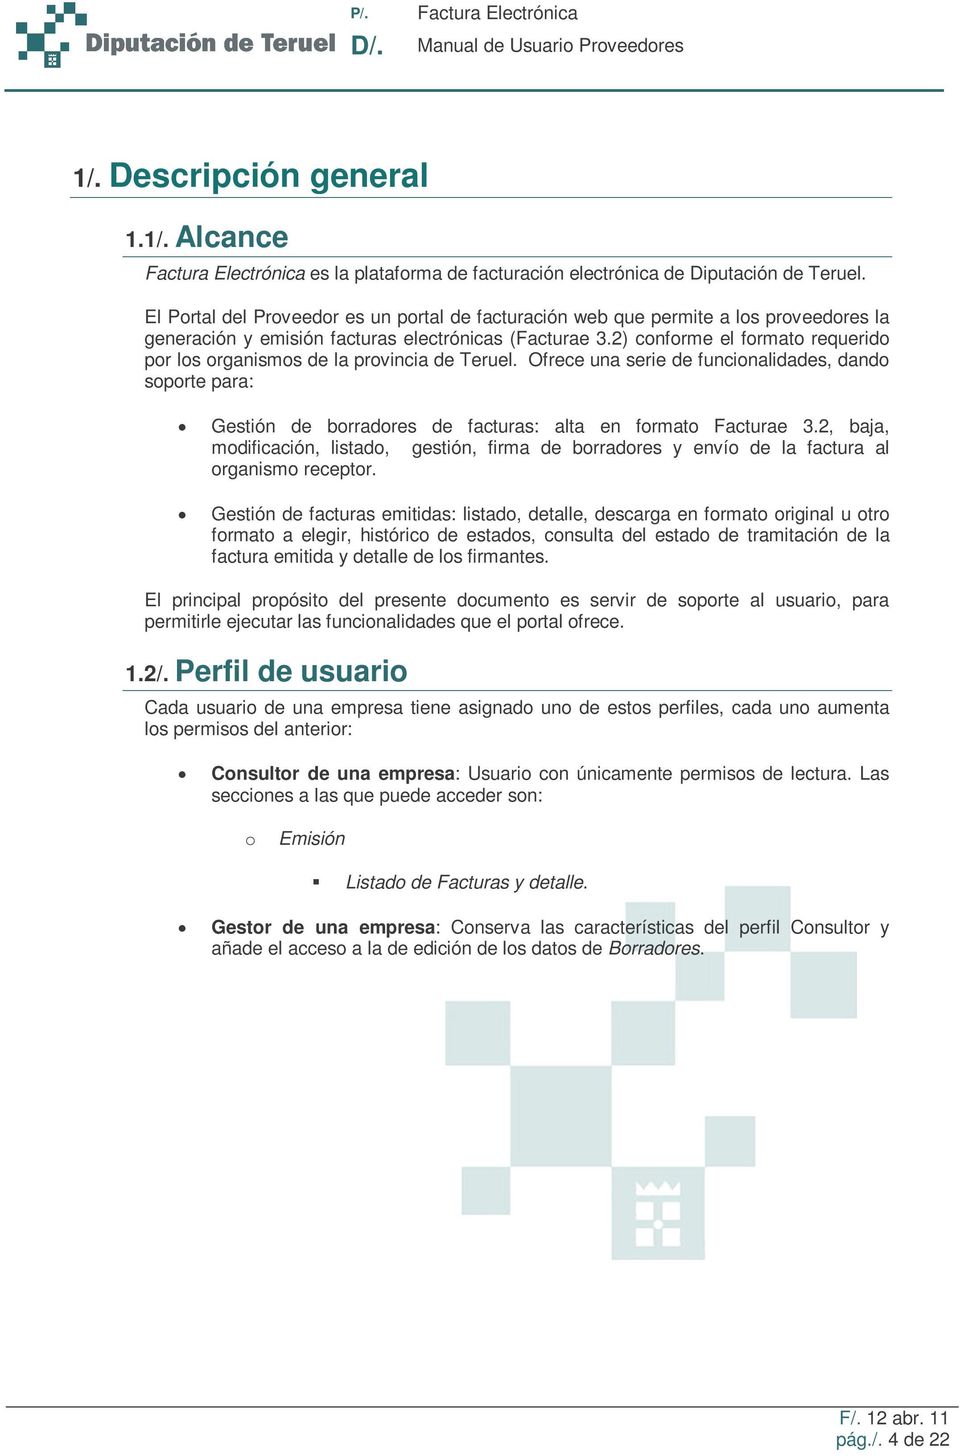 2) conforme el formato requerido por los organismos de la provincia de Teruel. Ofrece una serie de funcionalidades, dando soporte para: Gestión de borradores de facturas: alta en formato Facturae 3.